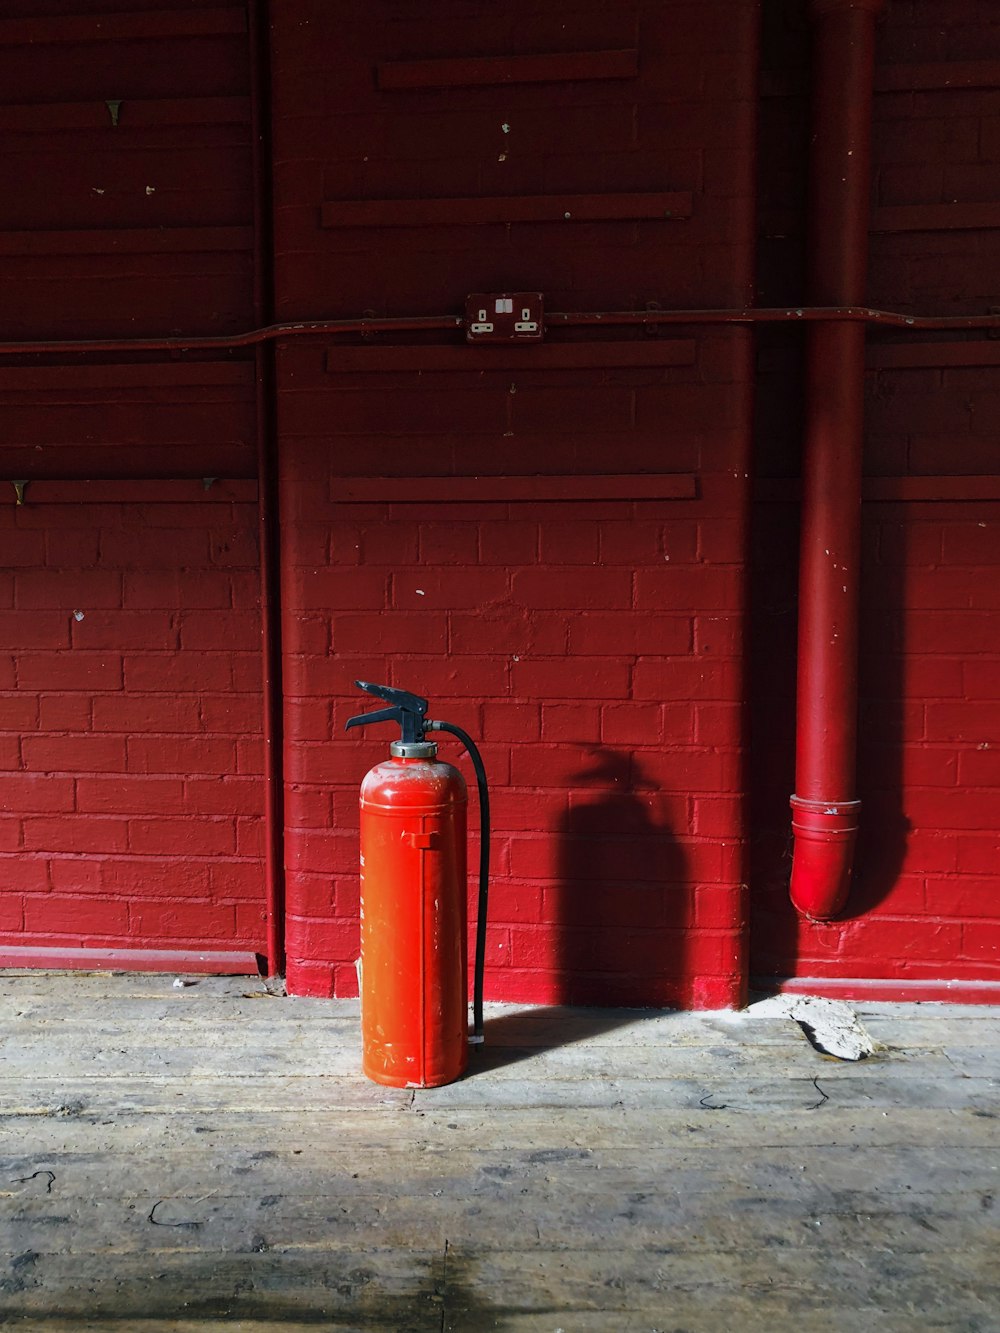 Roter Feuerlöscher in der Nähe der roten Wand